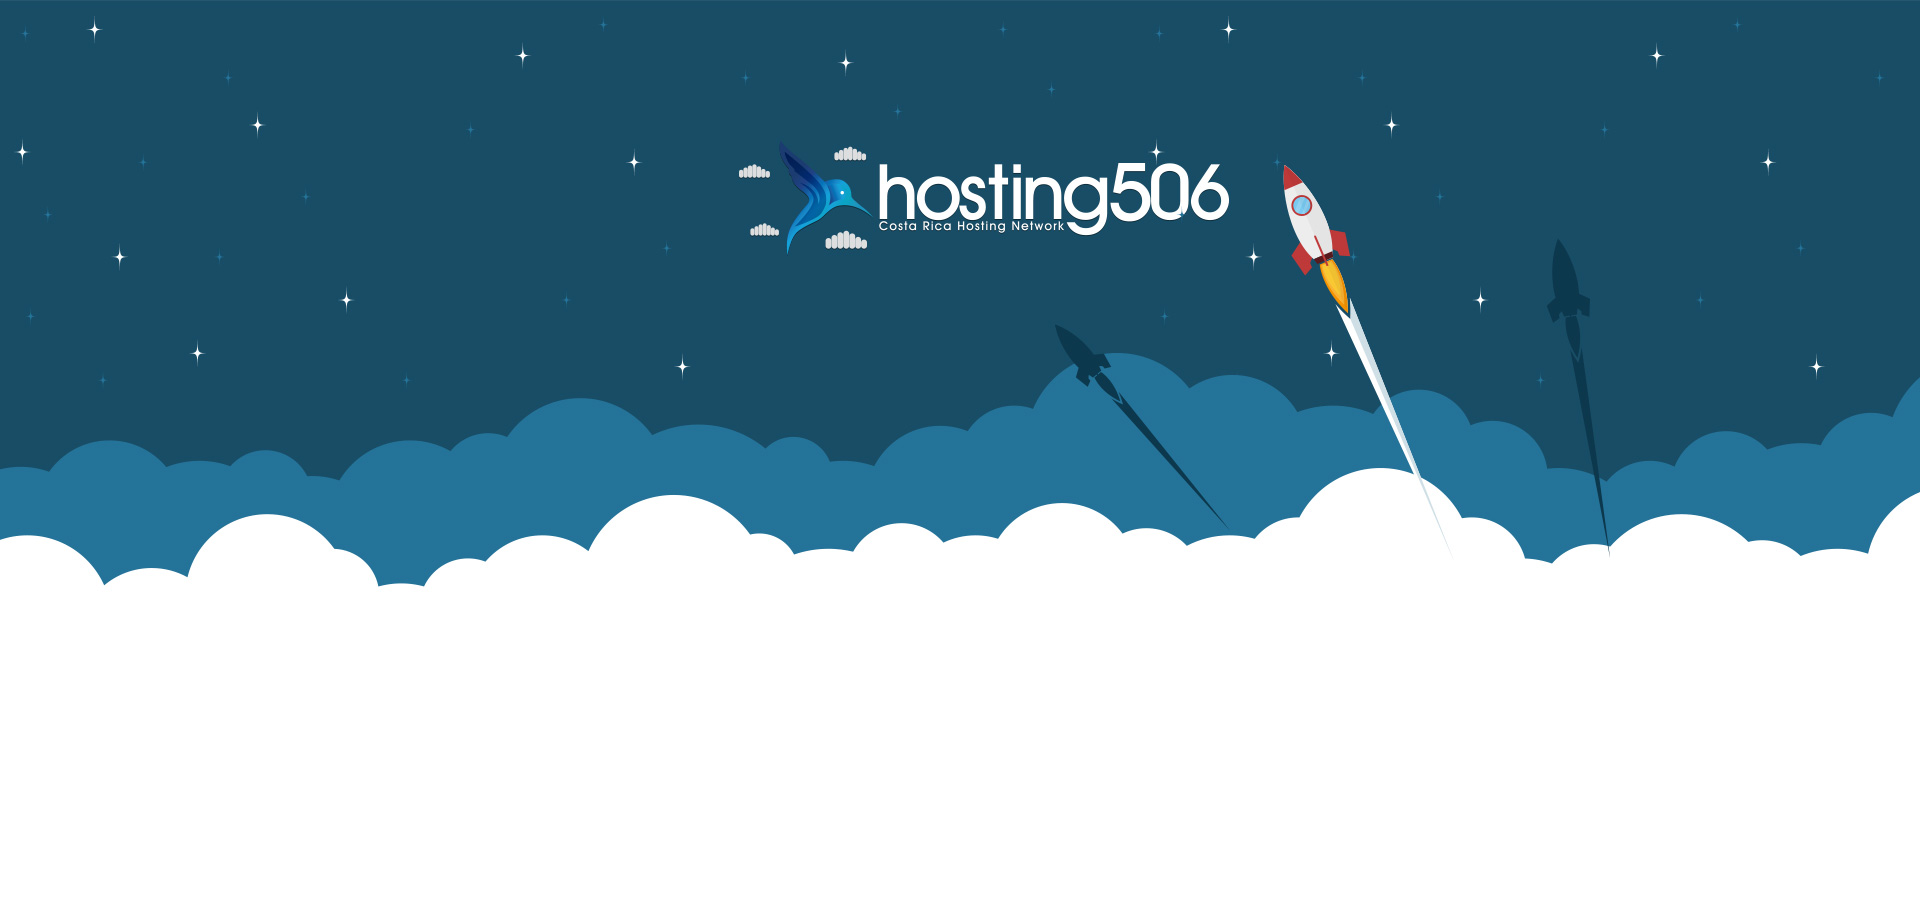 (c) Hosting506.com